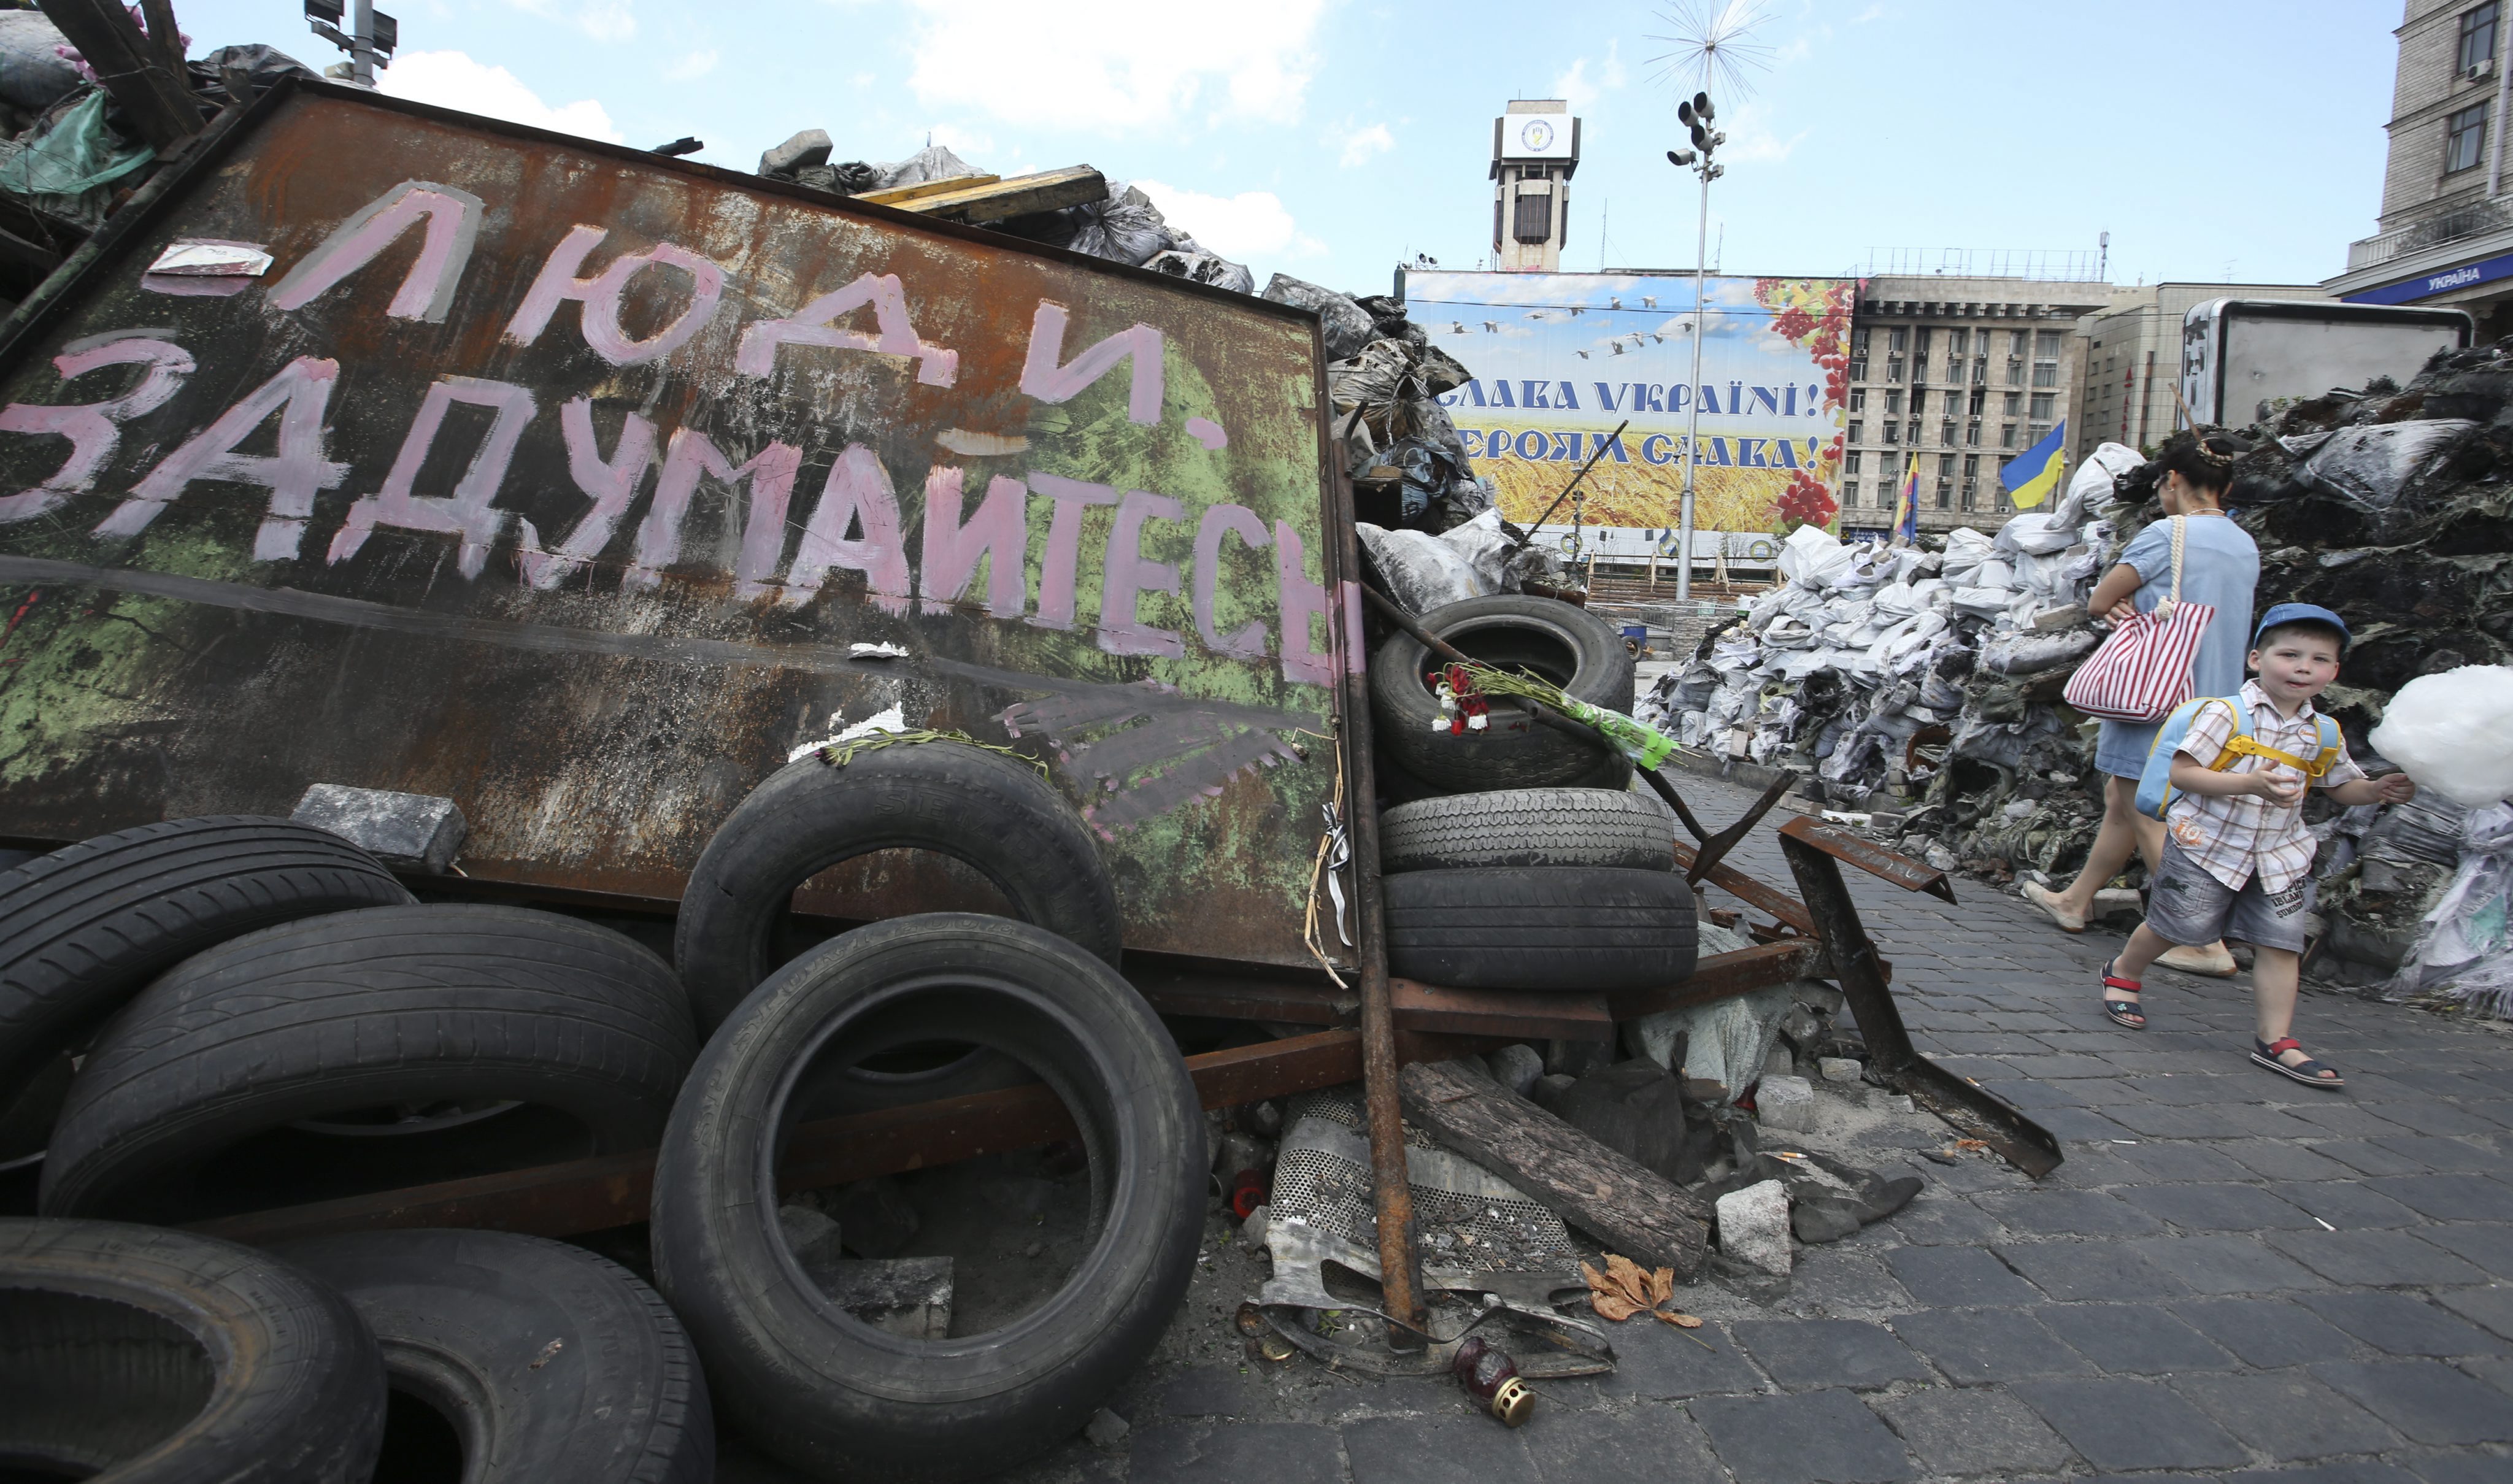 Παγκόσμια Τράπεζα: Η ουκρανική κρίση βάζει φρένο στην ανάπτυξη